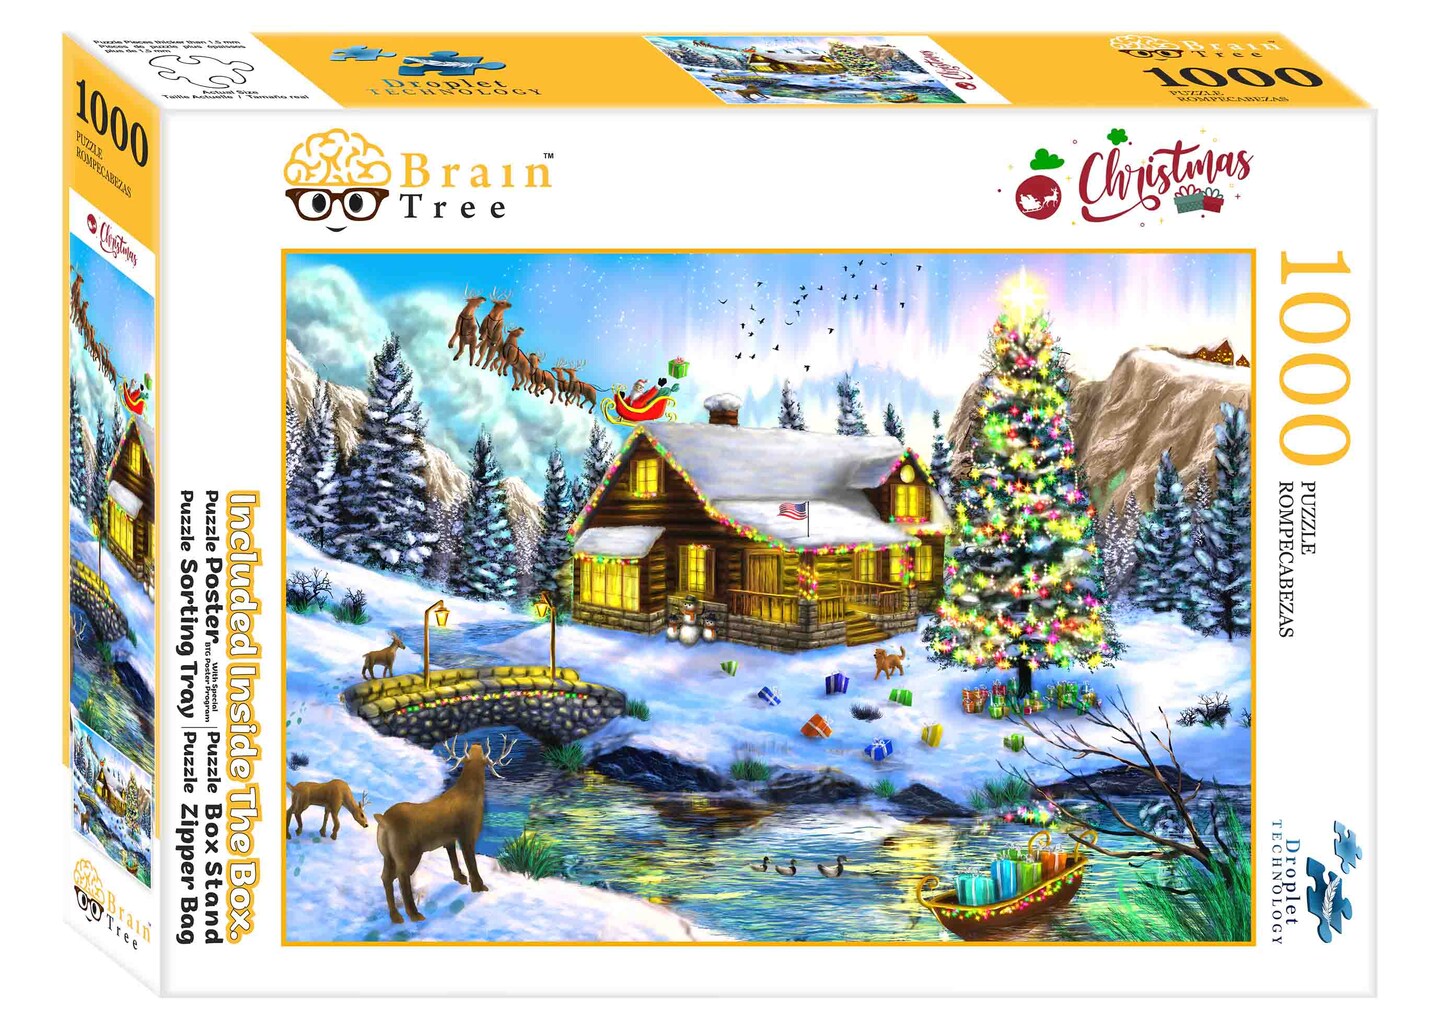 Brain Tree - Christmas Scenery Jigsaw Puzzles 1000 Piece